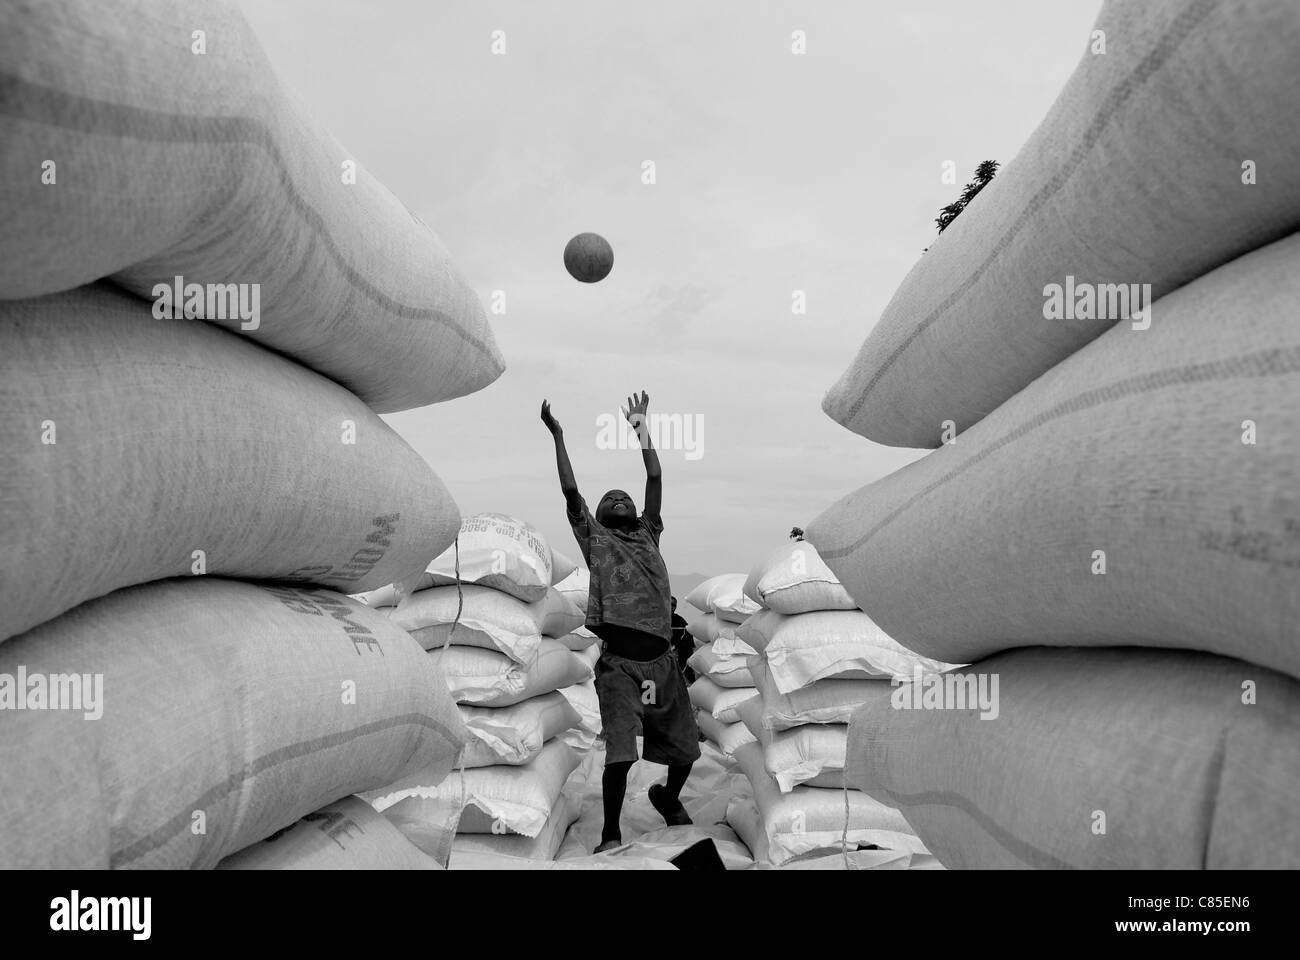 Junge intern Junge glücklich spielen mit einem Fußball in große Säcke von Grundnahrungsmittel an World Food Programm WFP Distribution Point in Nord-Kivu, Demokratische Republik Kongo Zentralafrika vertriebenen Stockfoto